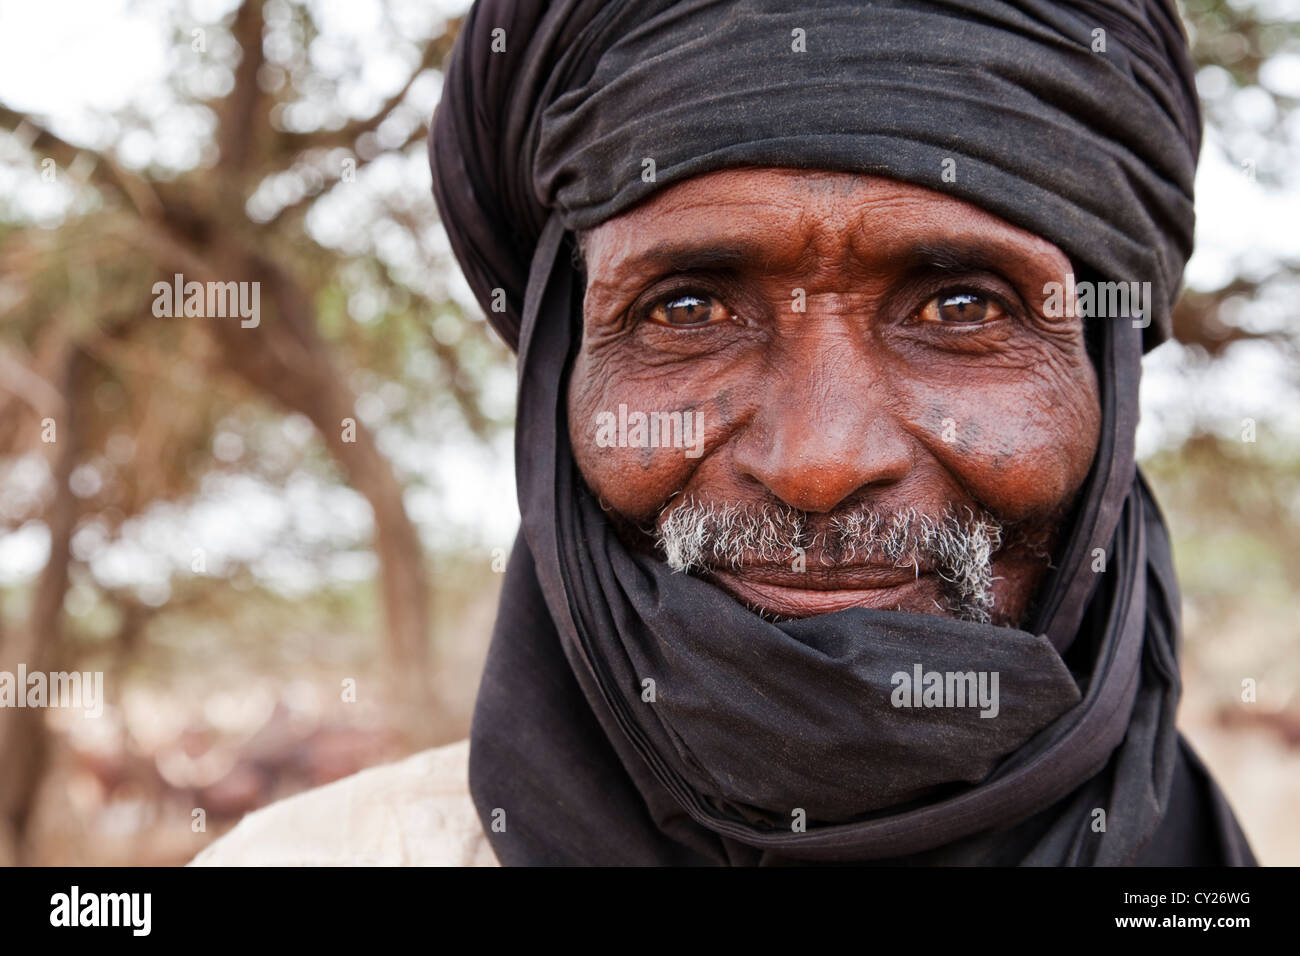 Portrait de nomades touaregs près d'Ingal, le Niger, l'air, de l'Afrique Banque D'Images